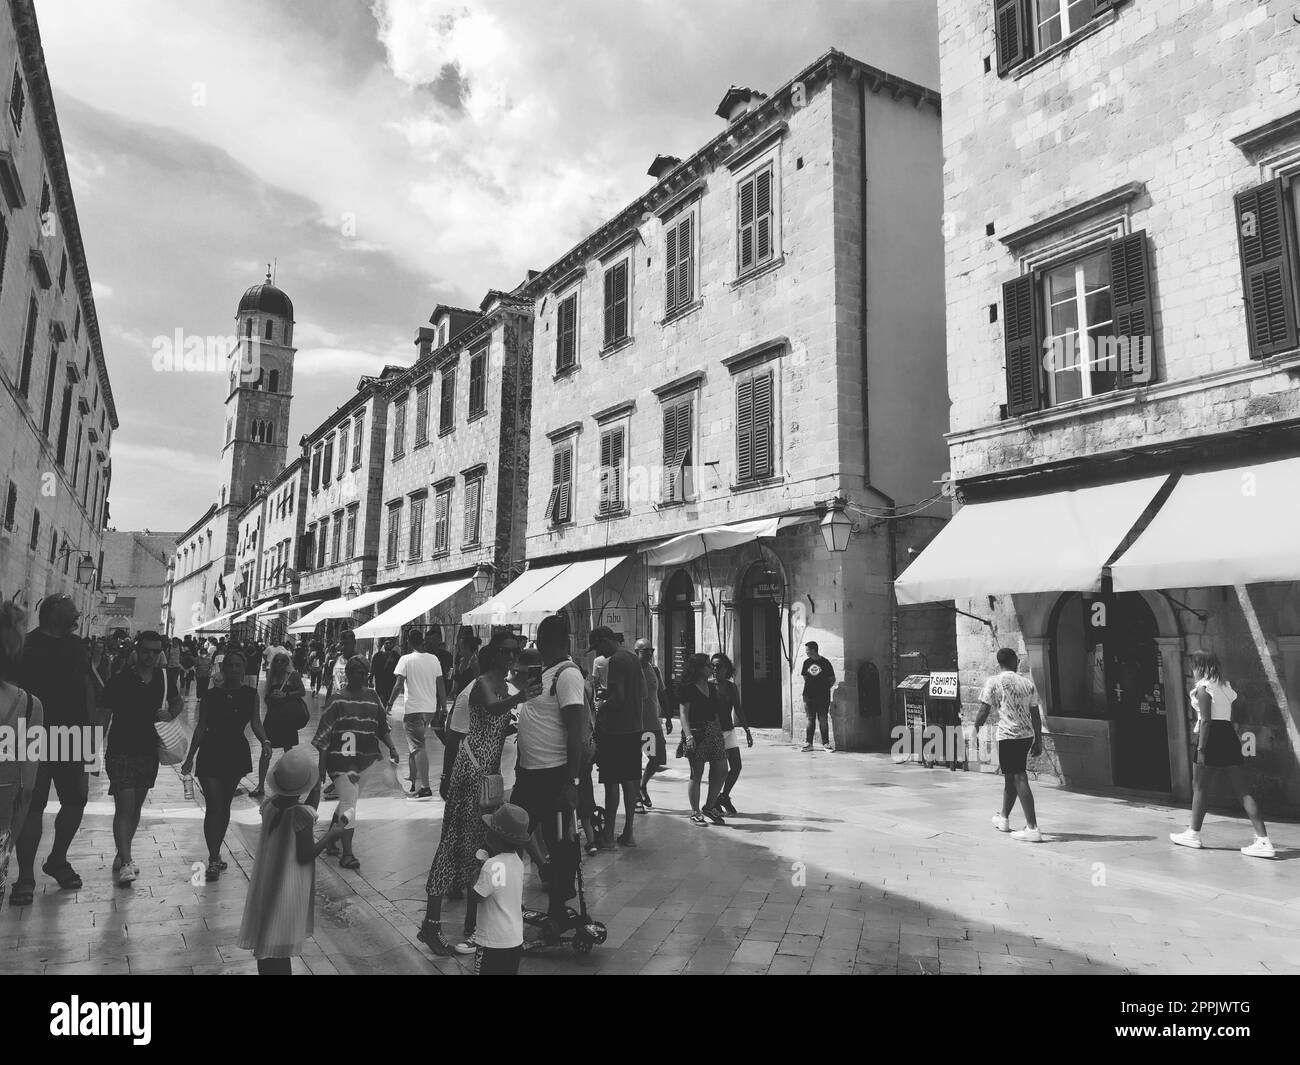 Stradun, Stradone est la rue principale du centre-ville historique de Dubrovnik en Croatie. sites architecturaux. Un endroit populaire pour les promenades touristiques. Les gens marchent le 14 août 2022 Noir et blanc Banque D'Images